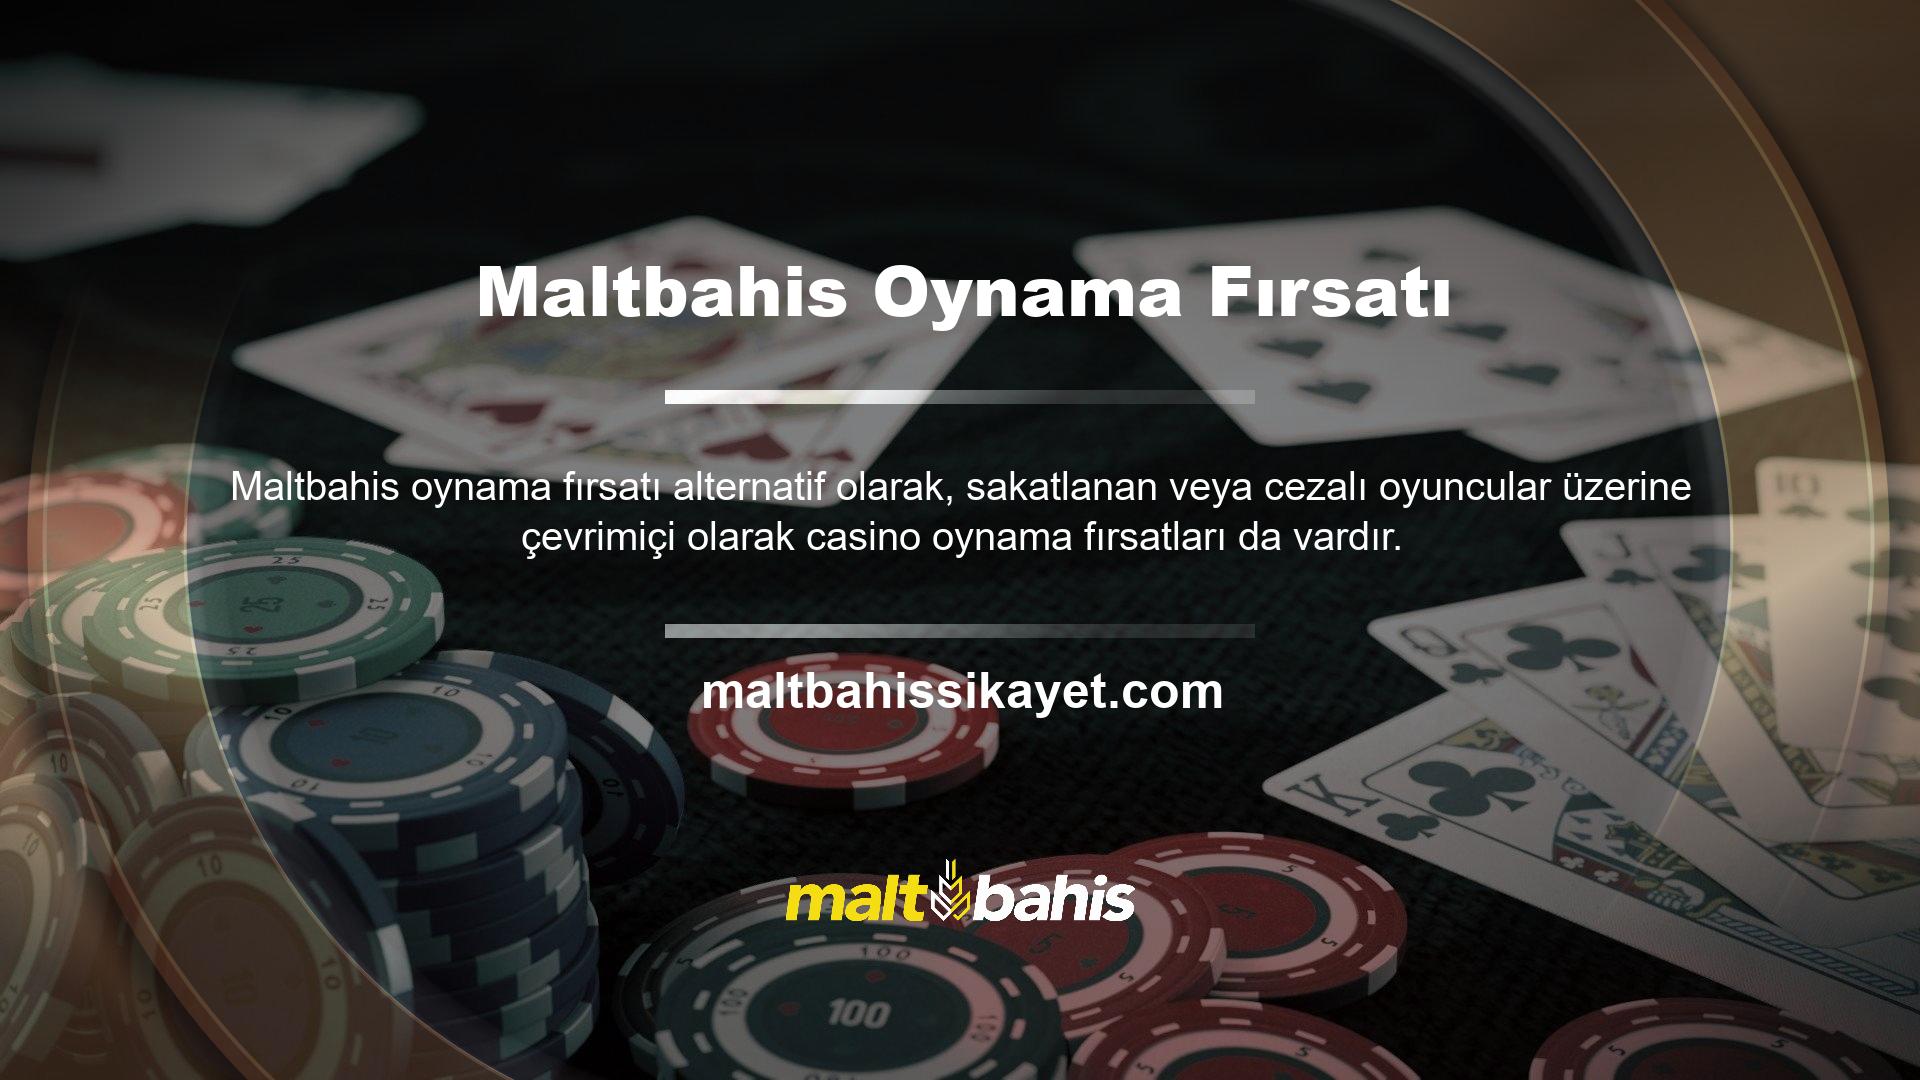 Maltbahis canlı casinosunun en önemli faydalarından biri uzun vadeli bahislere katılma fırsatıdır